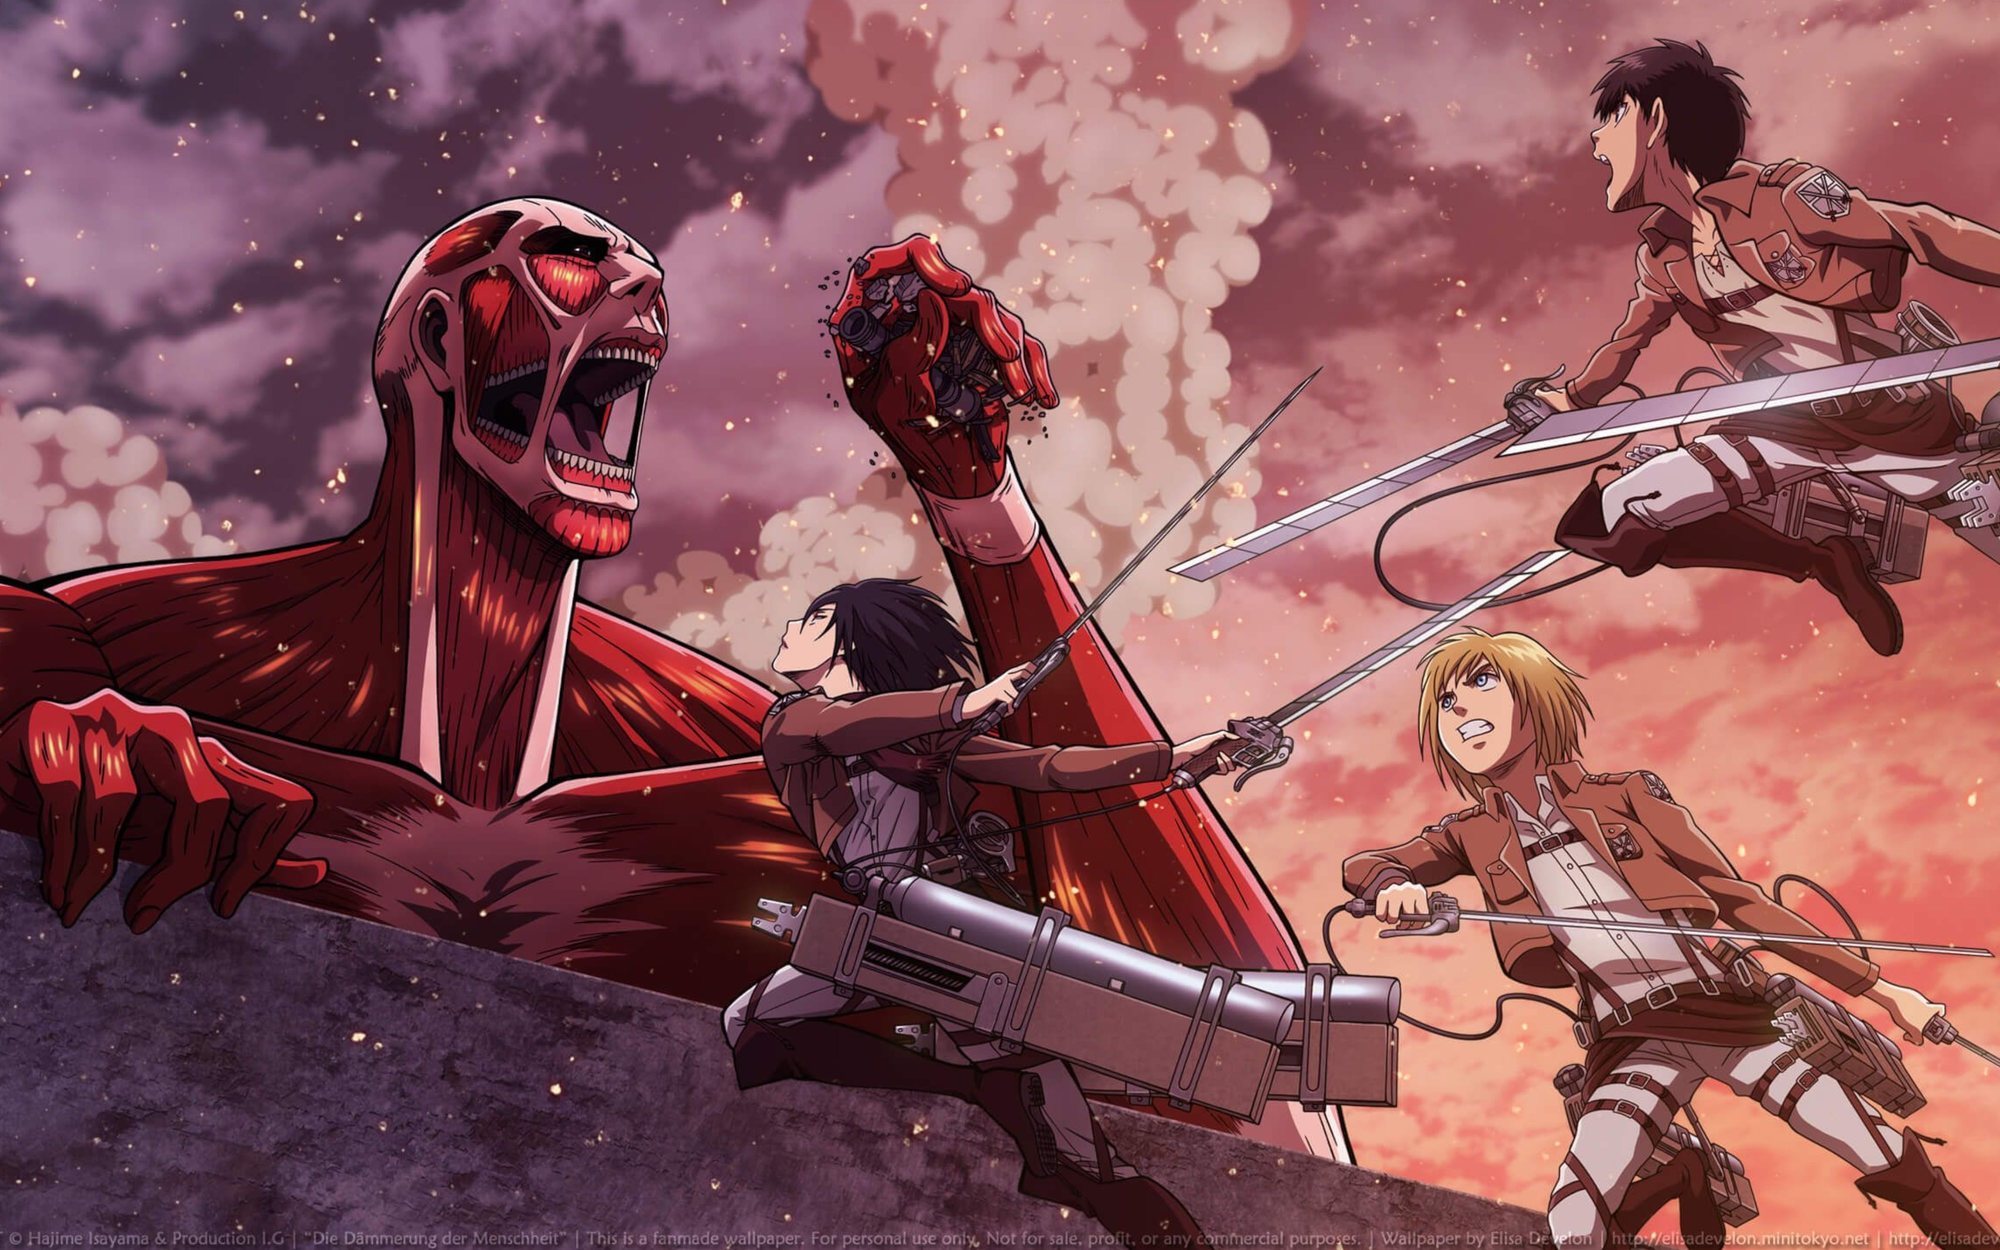 Por qué 'Fullmetal Alchemist: Brotherhood' es un anime imprescindible (que  ahora puedes ver en Netflix)